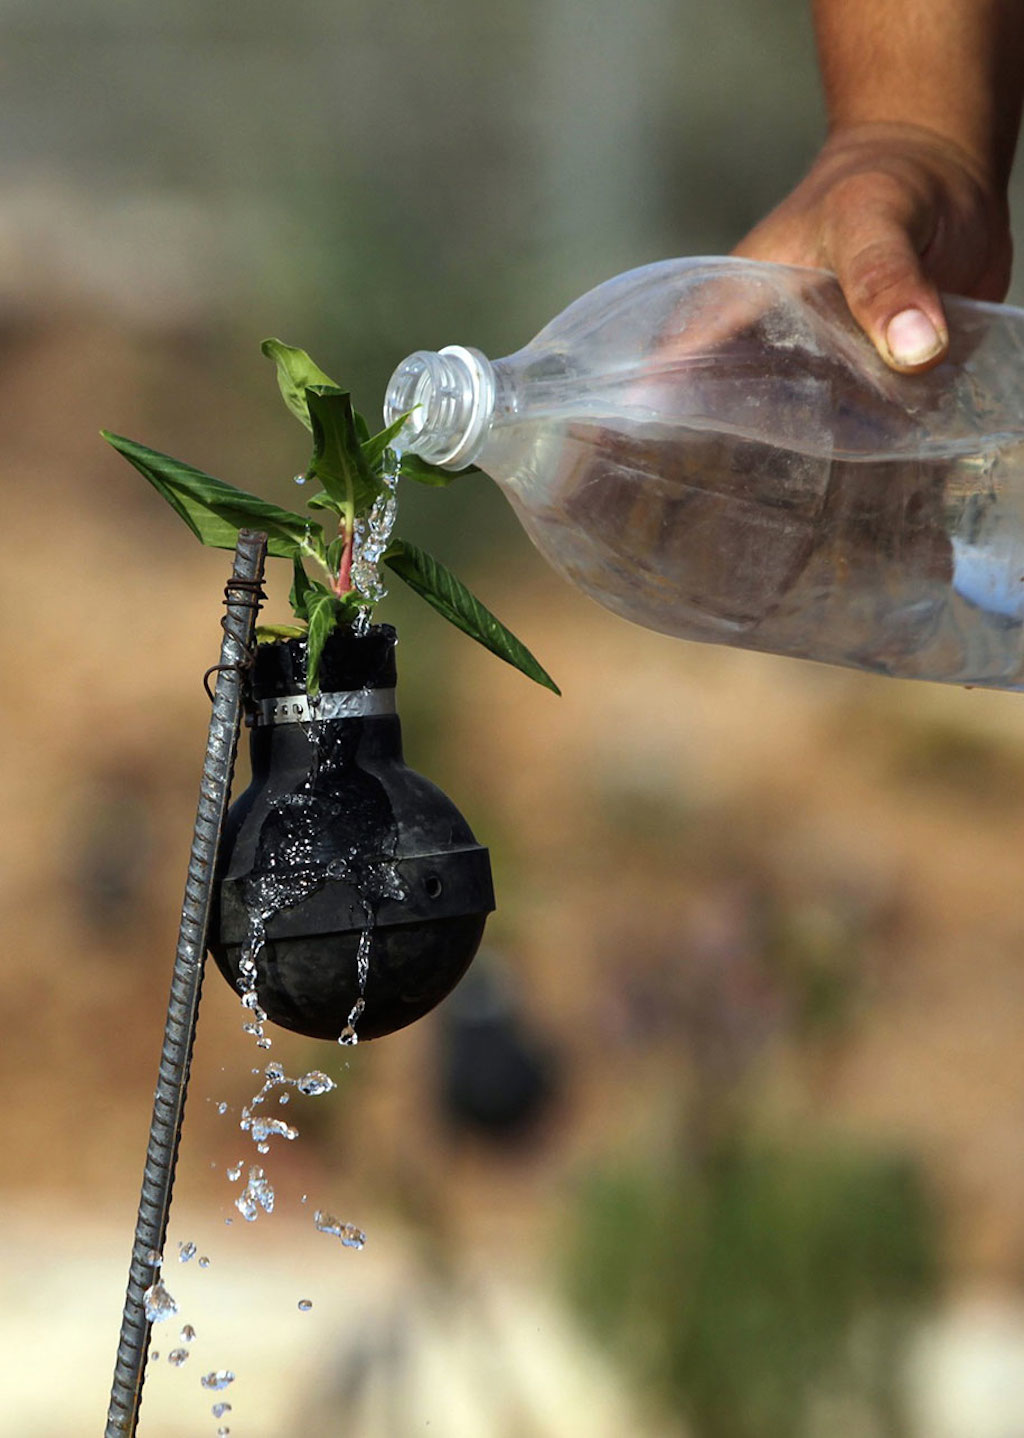 tear-gas-grenade-flower-pots-palestine-6